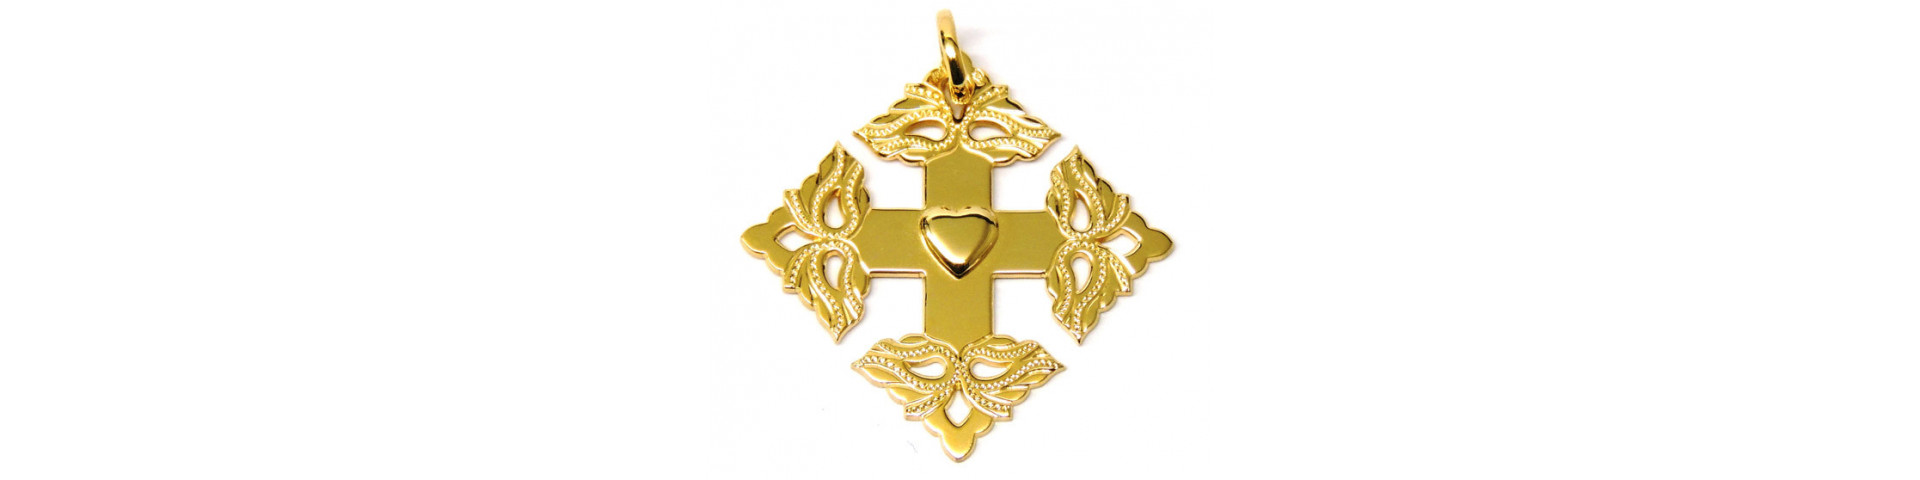 Croix de Megève - Joly-Pottuz Joaillier-Bijoutier à Megève